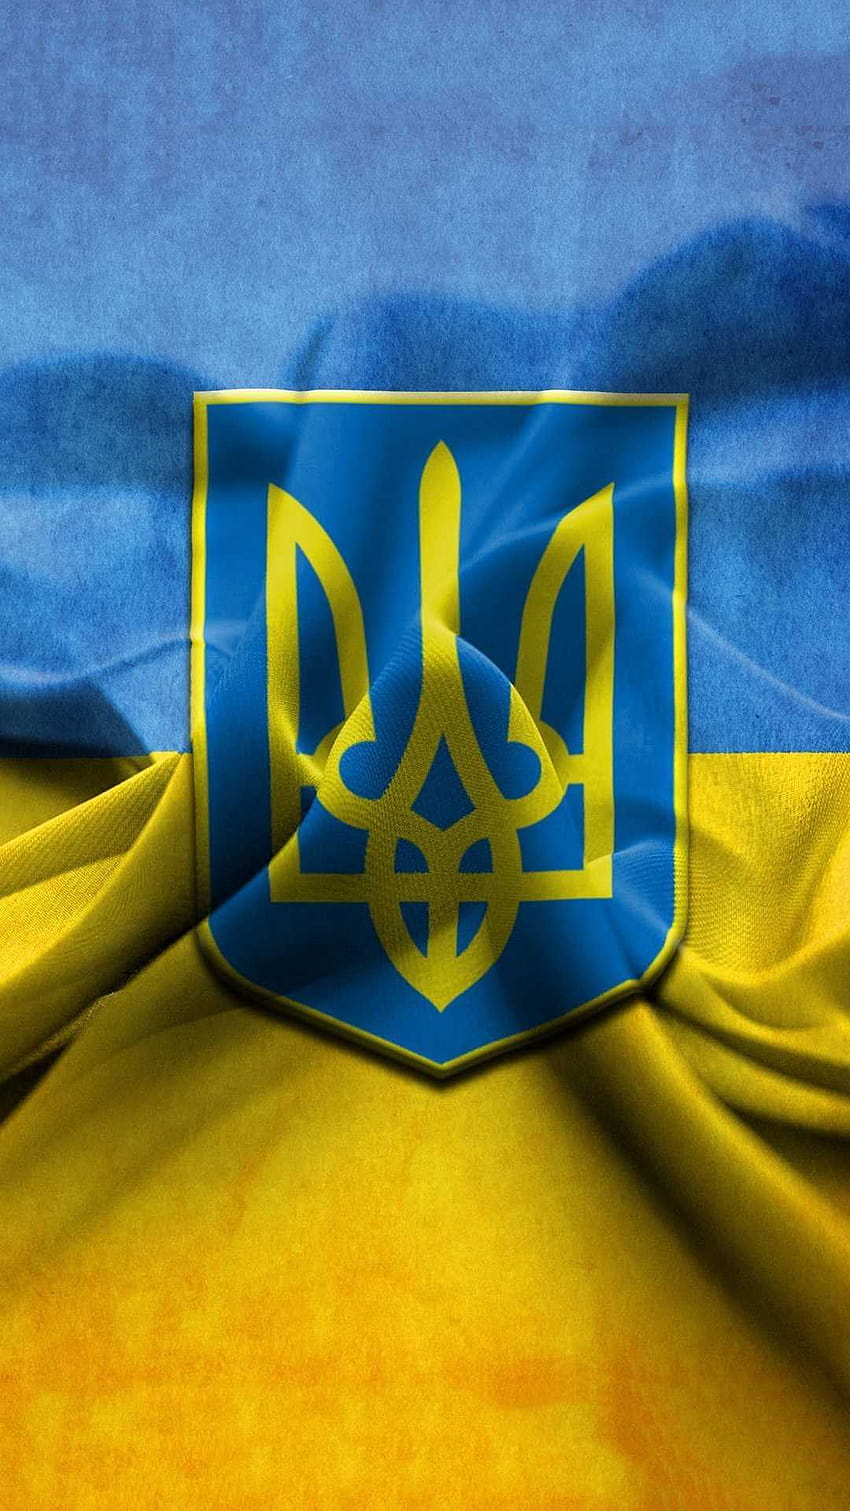 Hãy trang trí cho chiếc iPhone của bạn với một hình nền đất nước Ukraina tuyệt đẹp. Hình nền này không chỉ giúp tạo điểm nhấn cho chiếc điện thoại của bạn mà còn giúp bạn thể hiện niềm yêu quý cho quê hương Ukraina của mình. Bạn sẽ không muốn bỏ lỡ hình ảnh đẹp như thế này đâu.